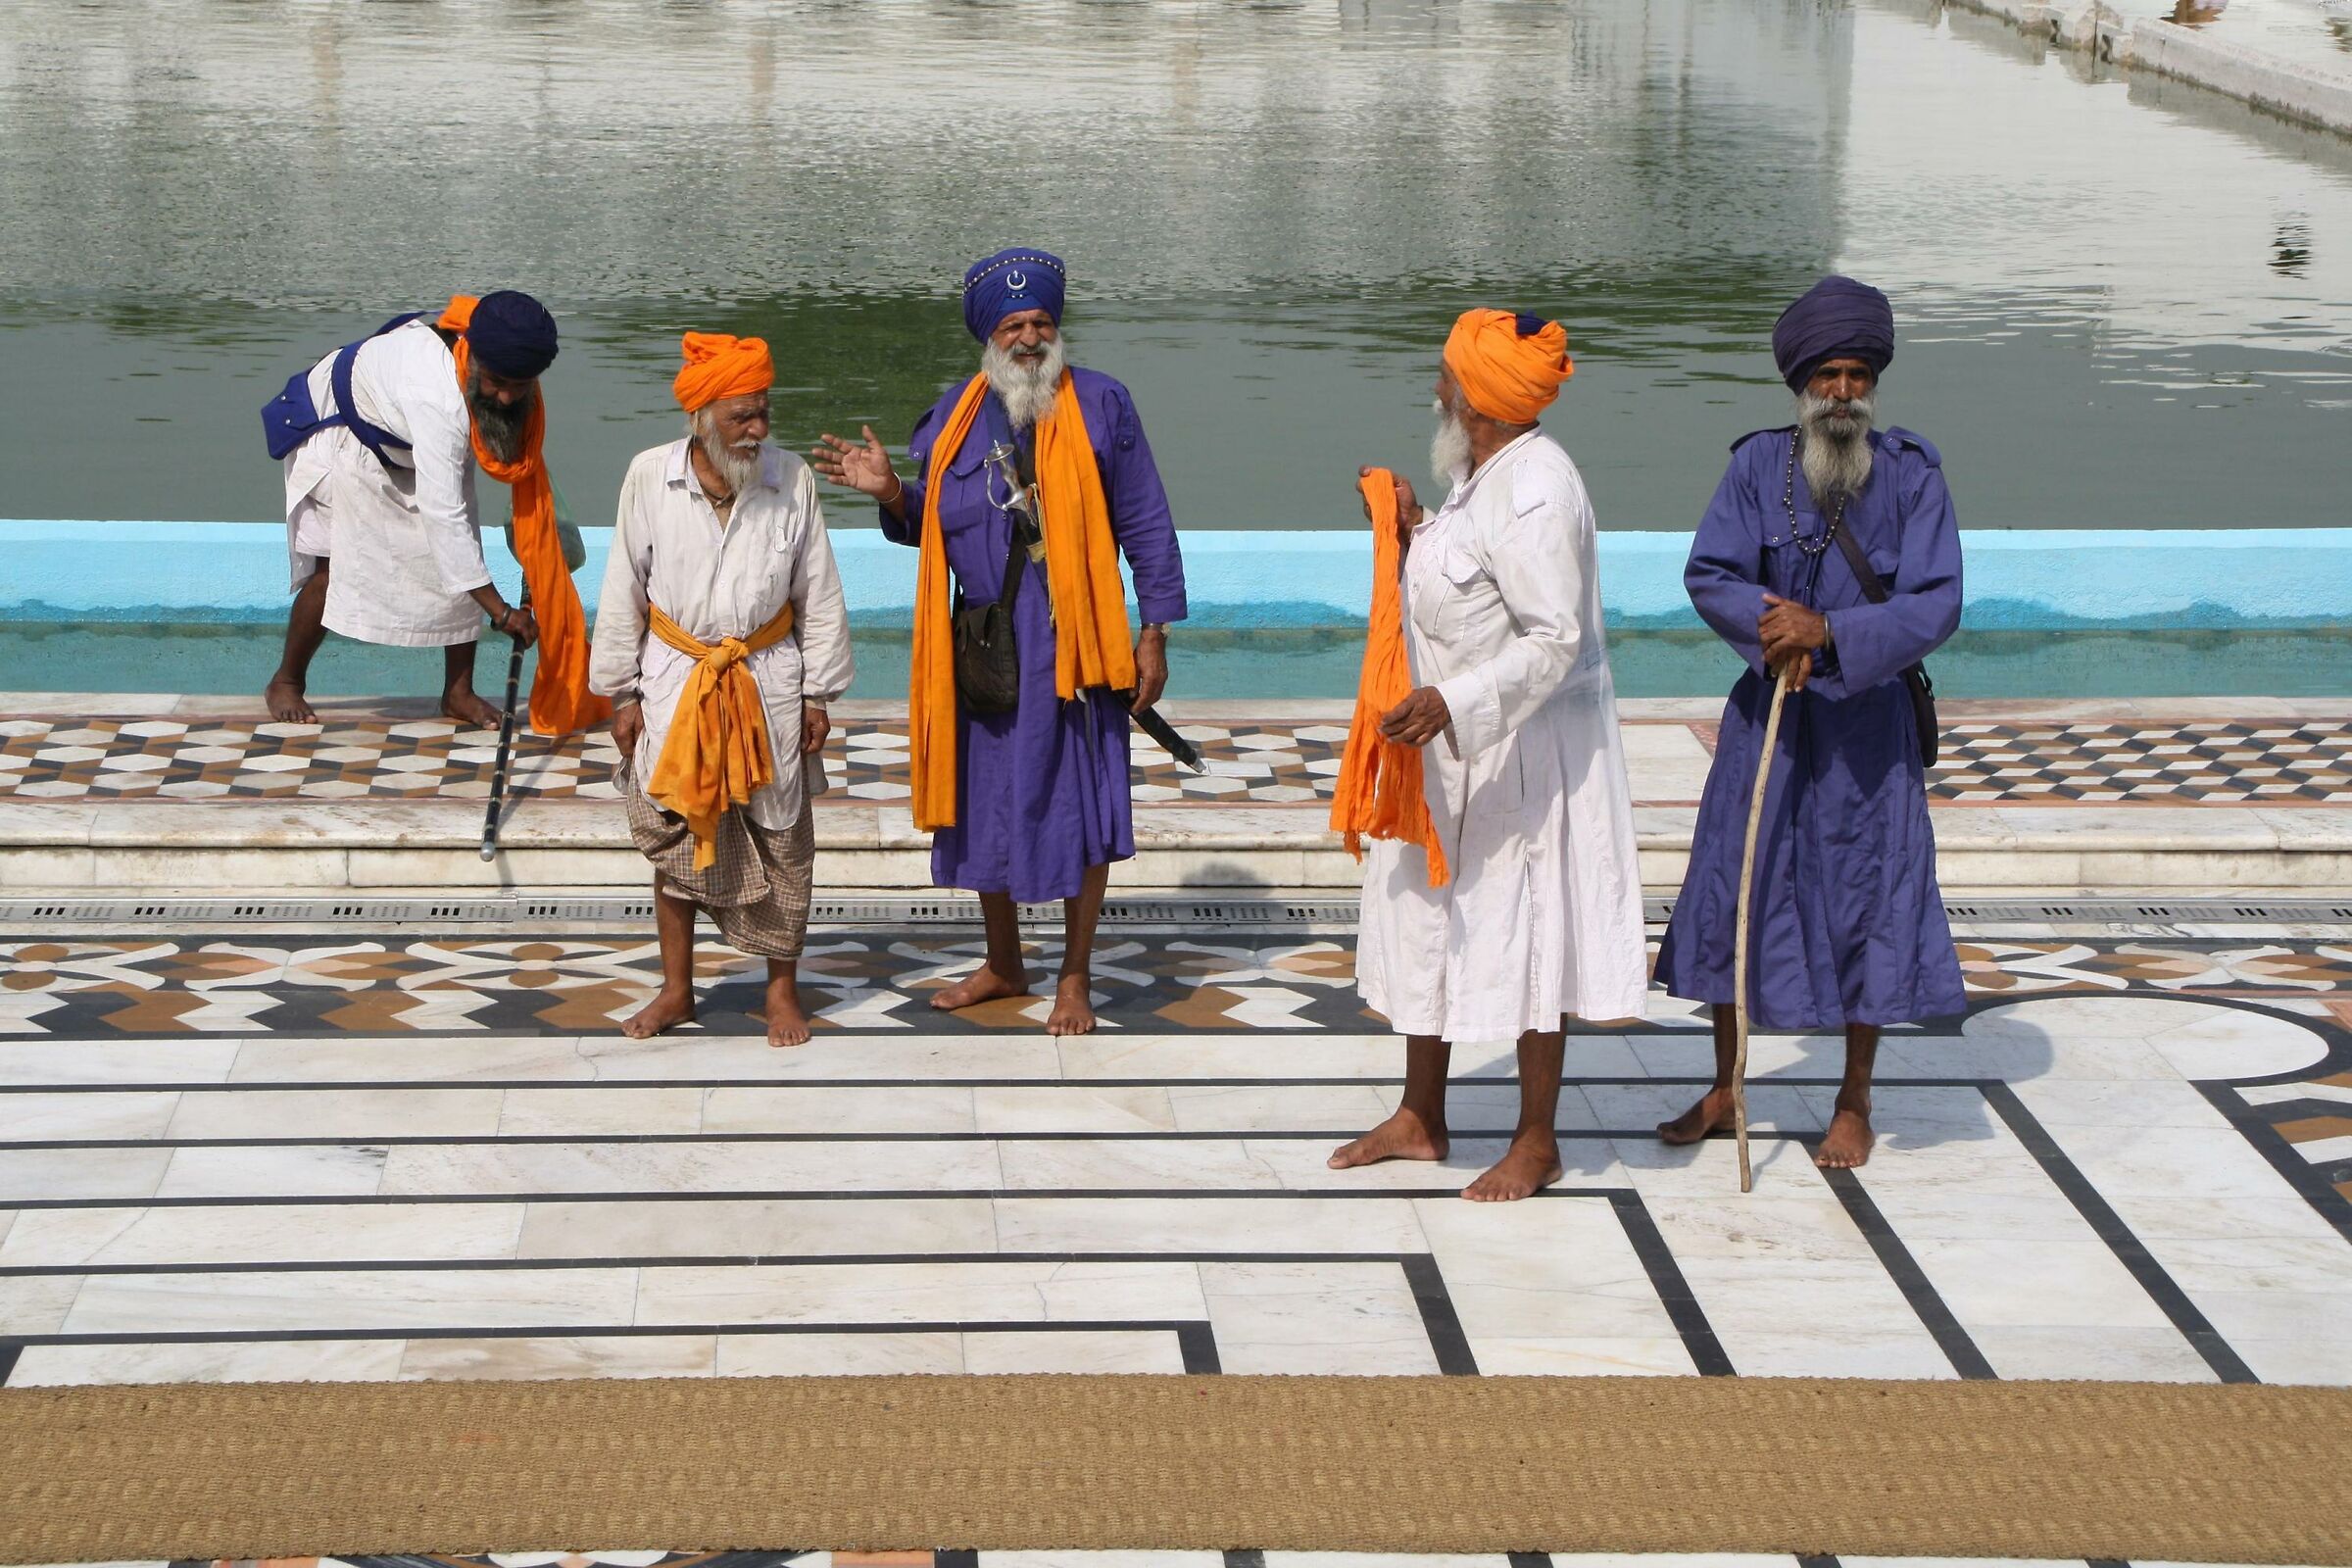 The elegance of Sikh men...